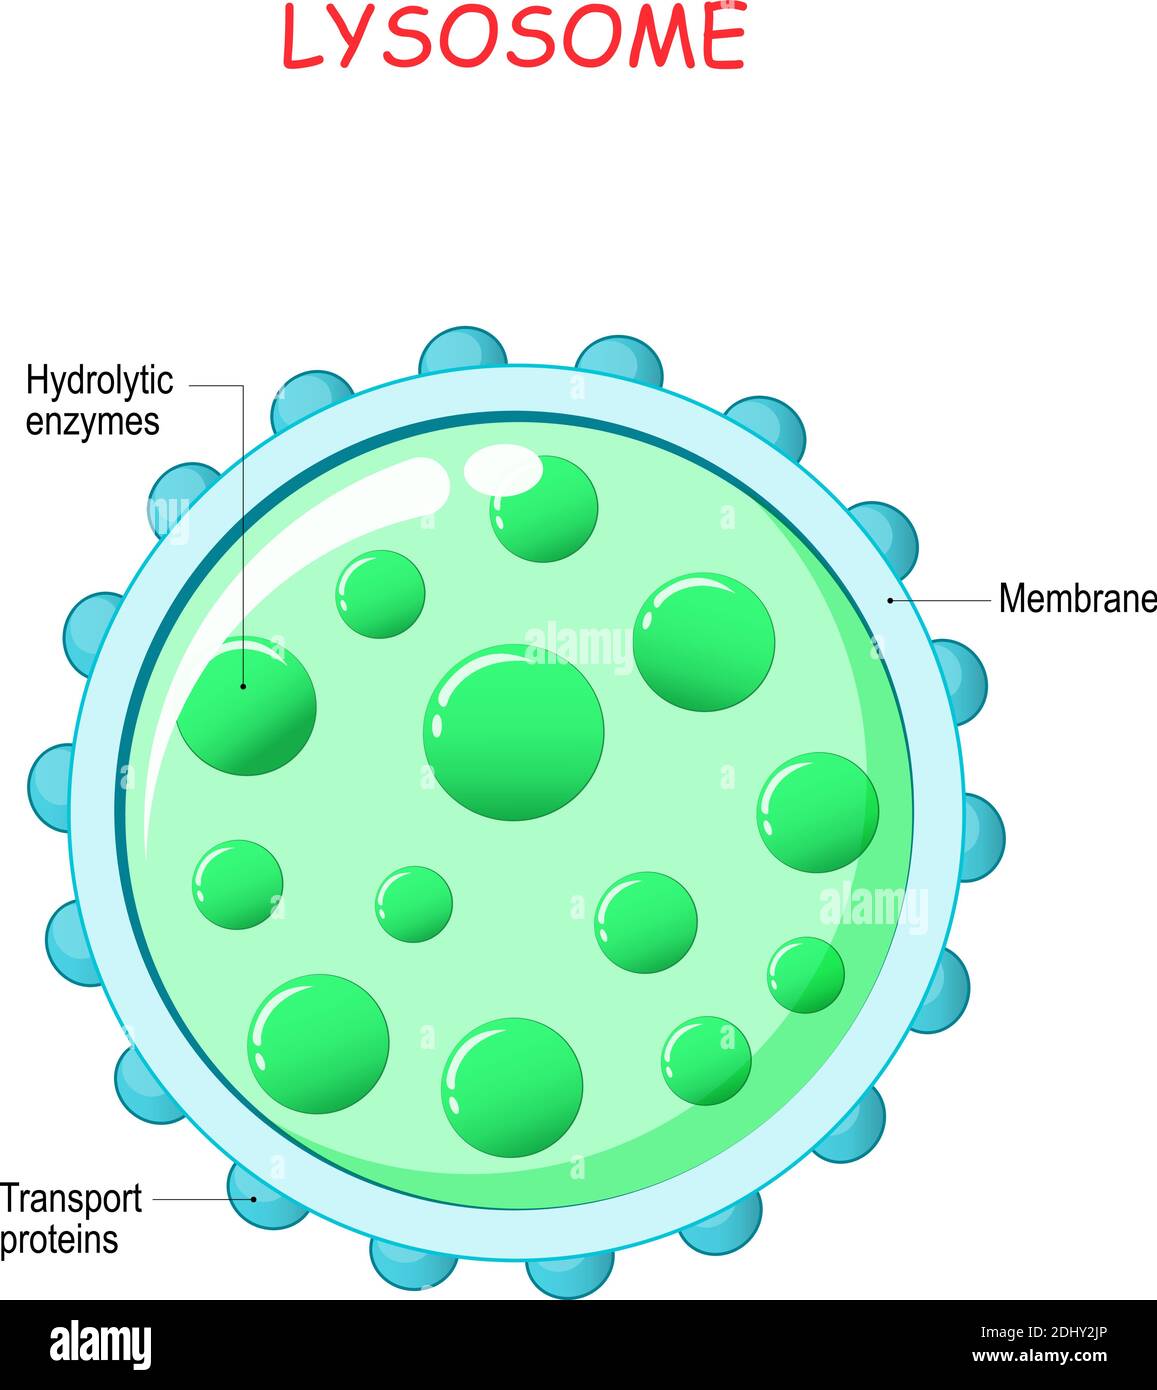 anatomie du lysosome. Enzymes hydrolytiques, protéines membranaires et protéines de transport. Cette organelle utilise les enzymes pour briser les particules virales ou les bactéries Illustration de Vecteur